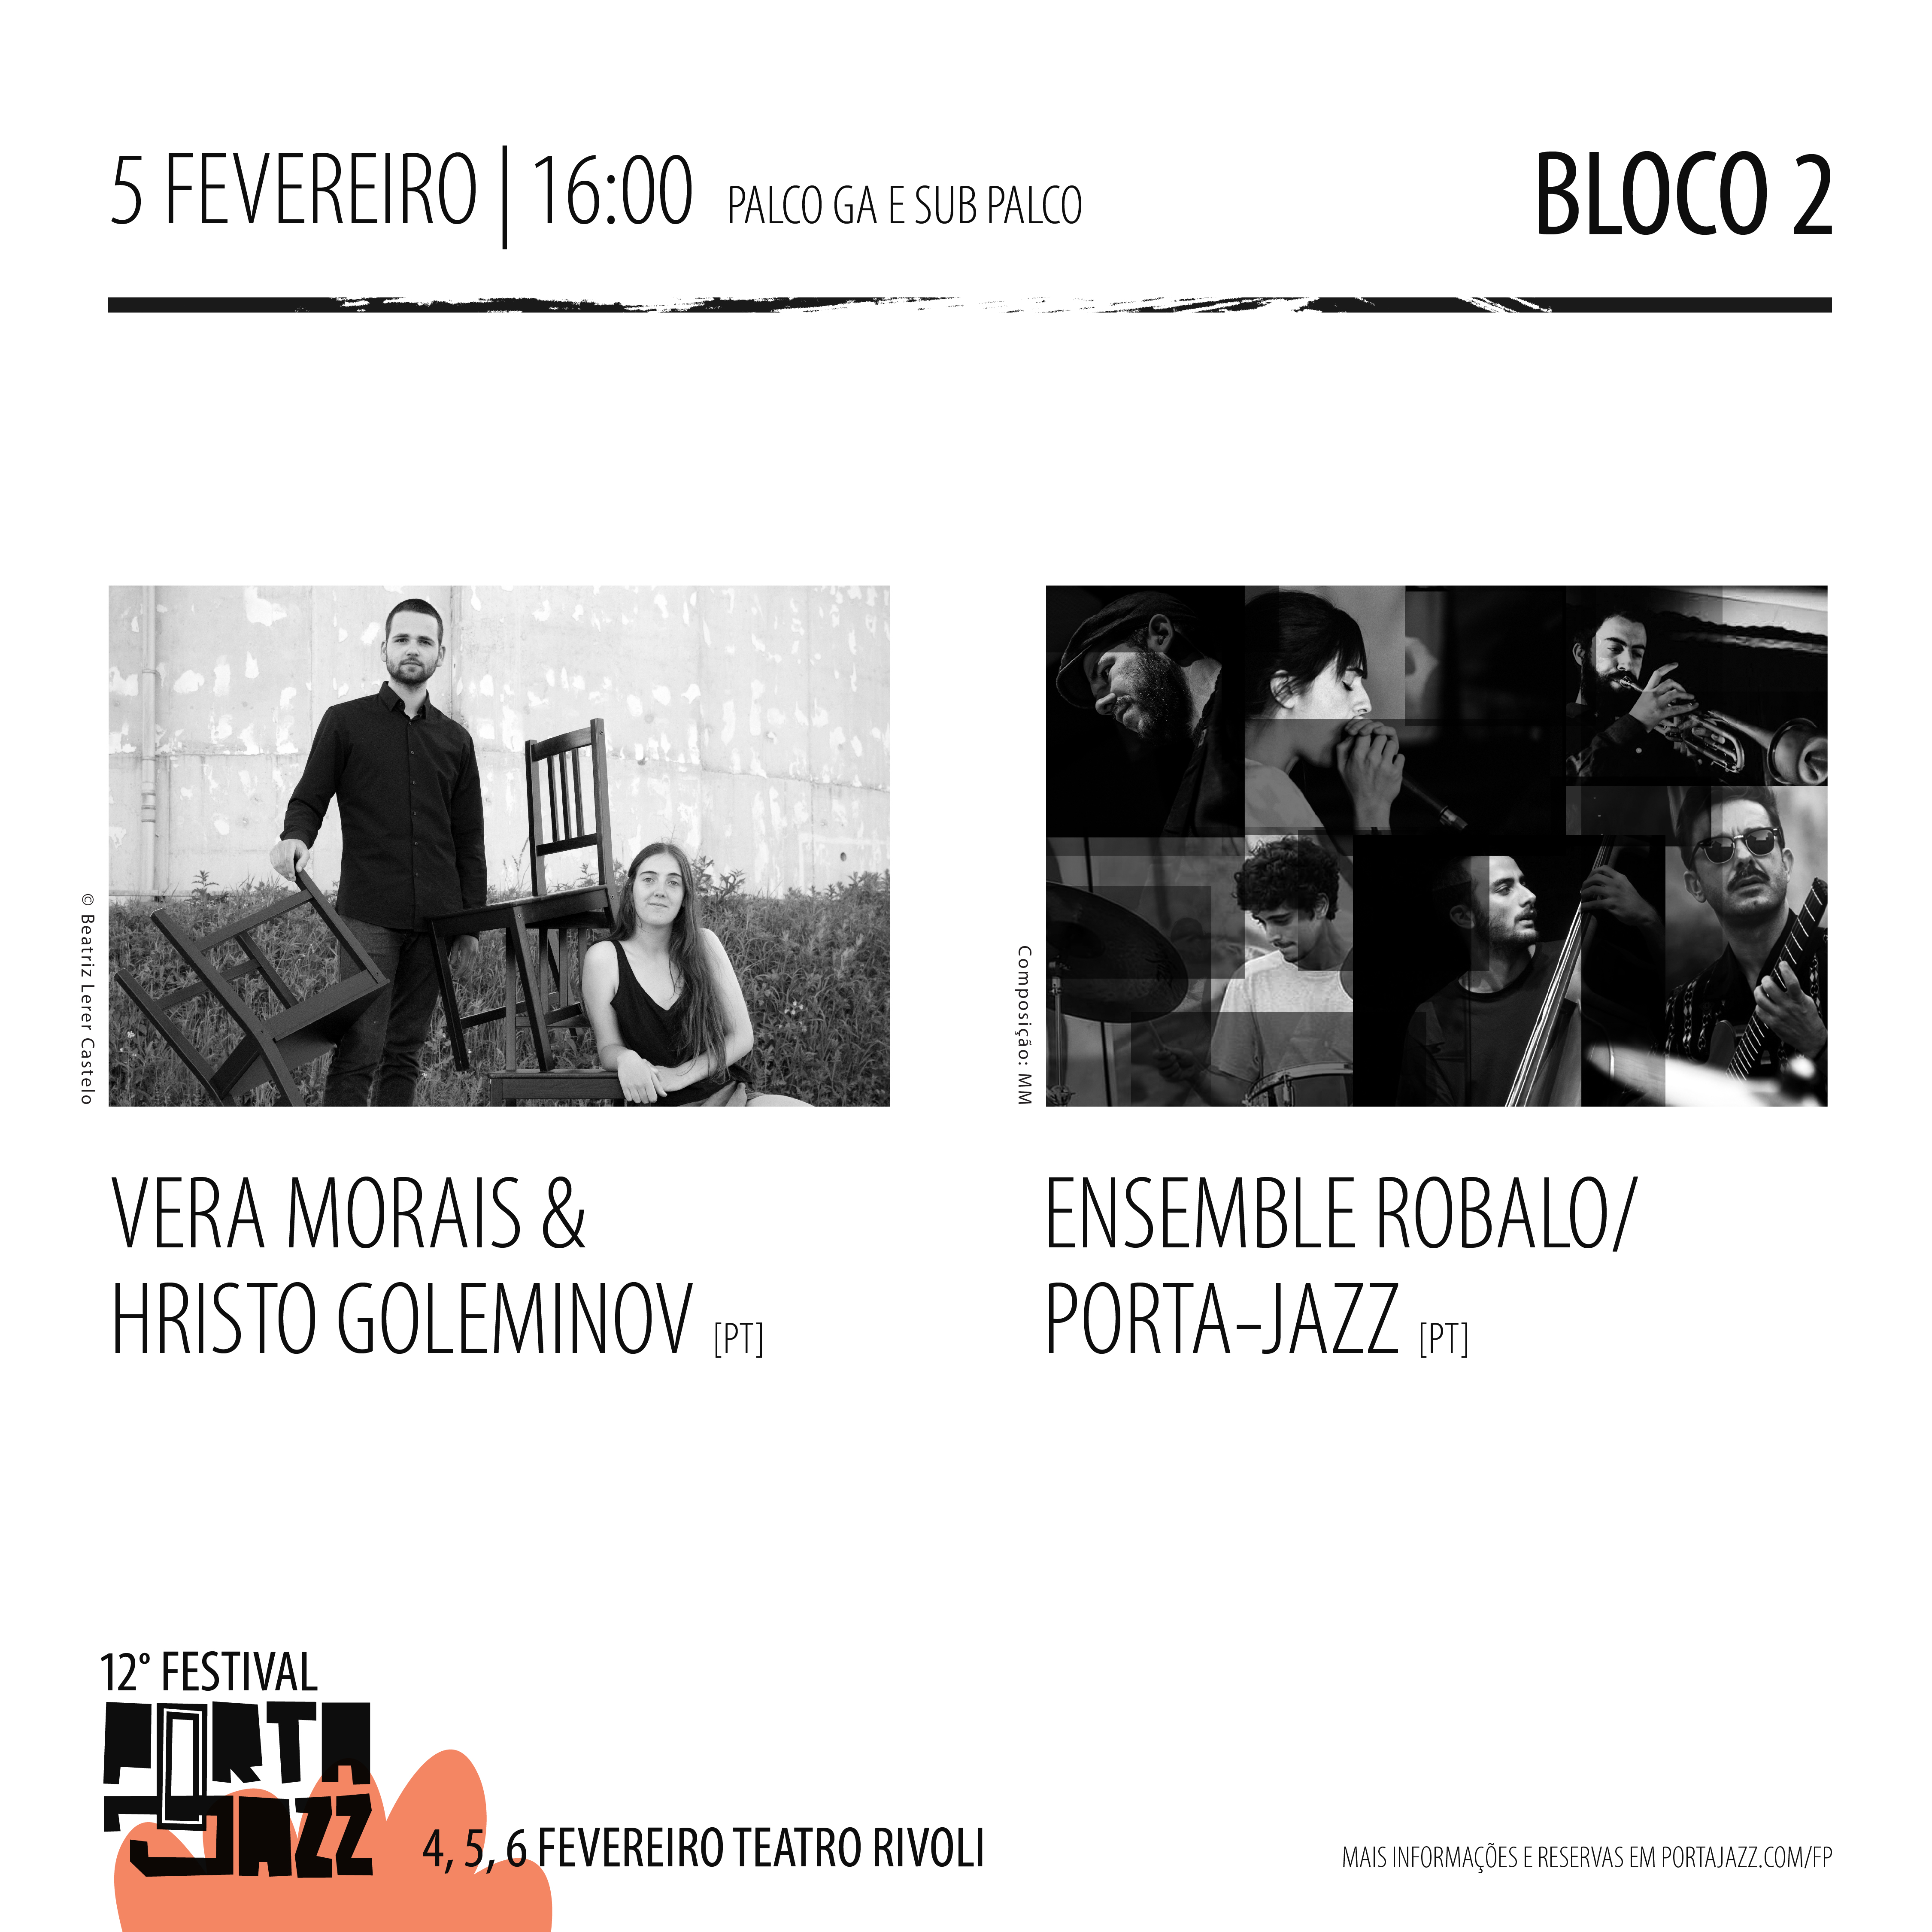 imagem 11º Festival Porta-Jazz Bloco 2